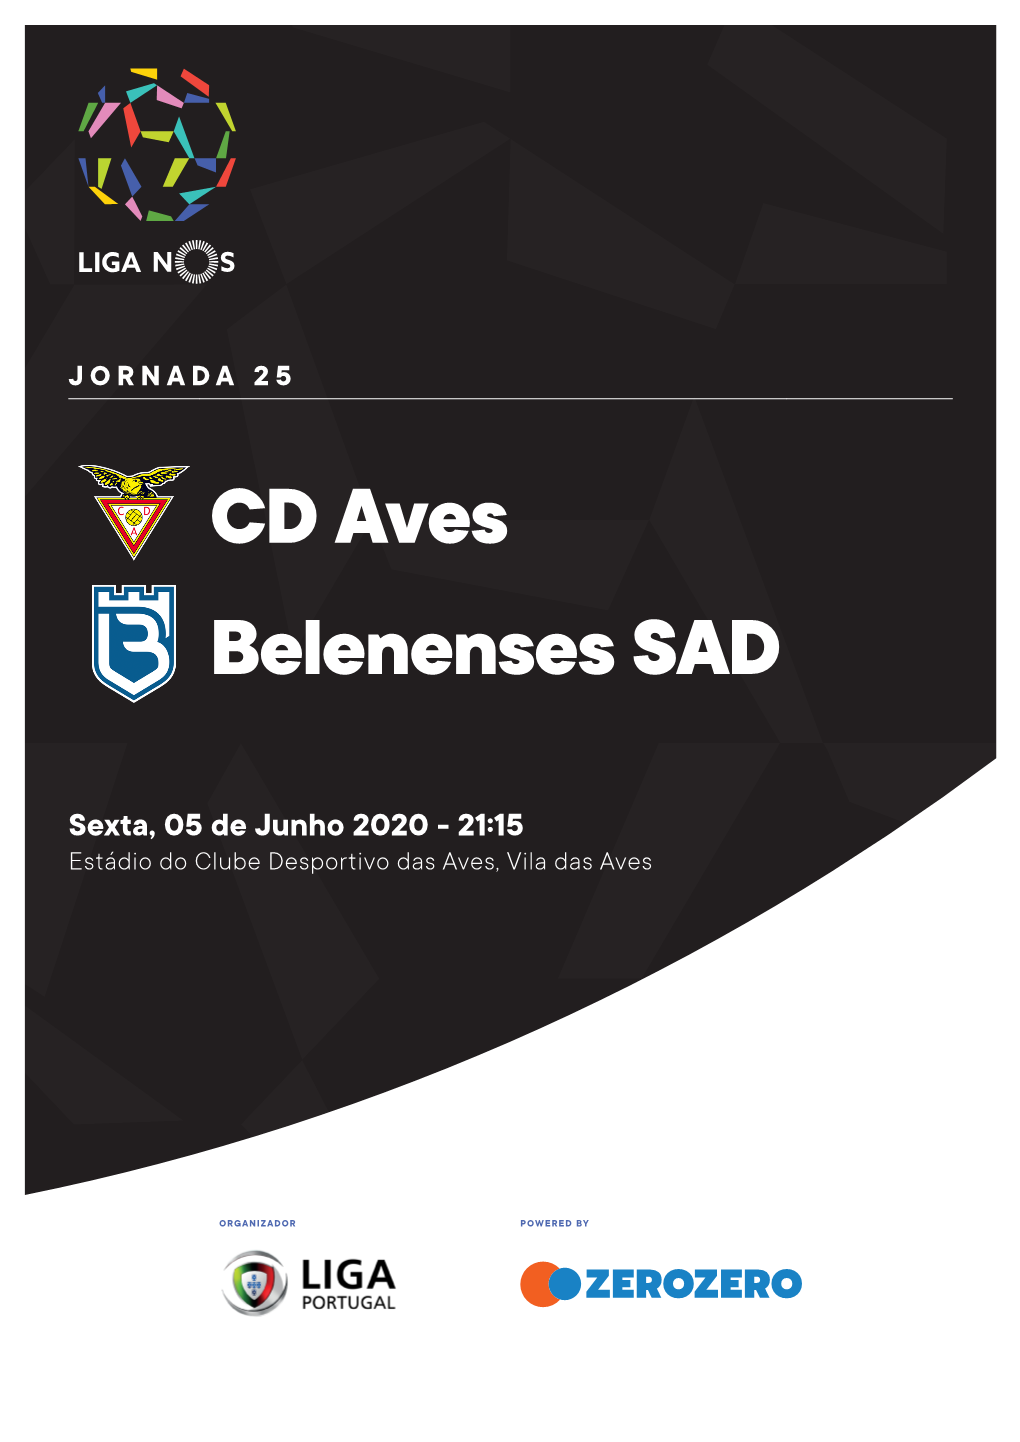 CD Aves Belenenses SAD